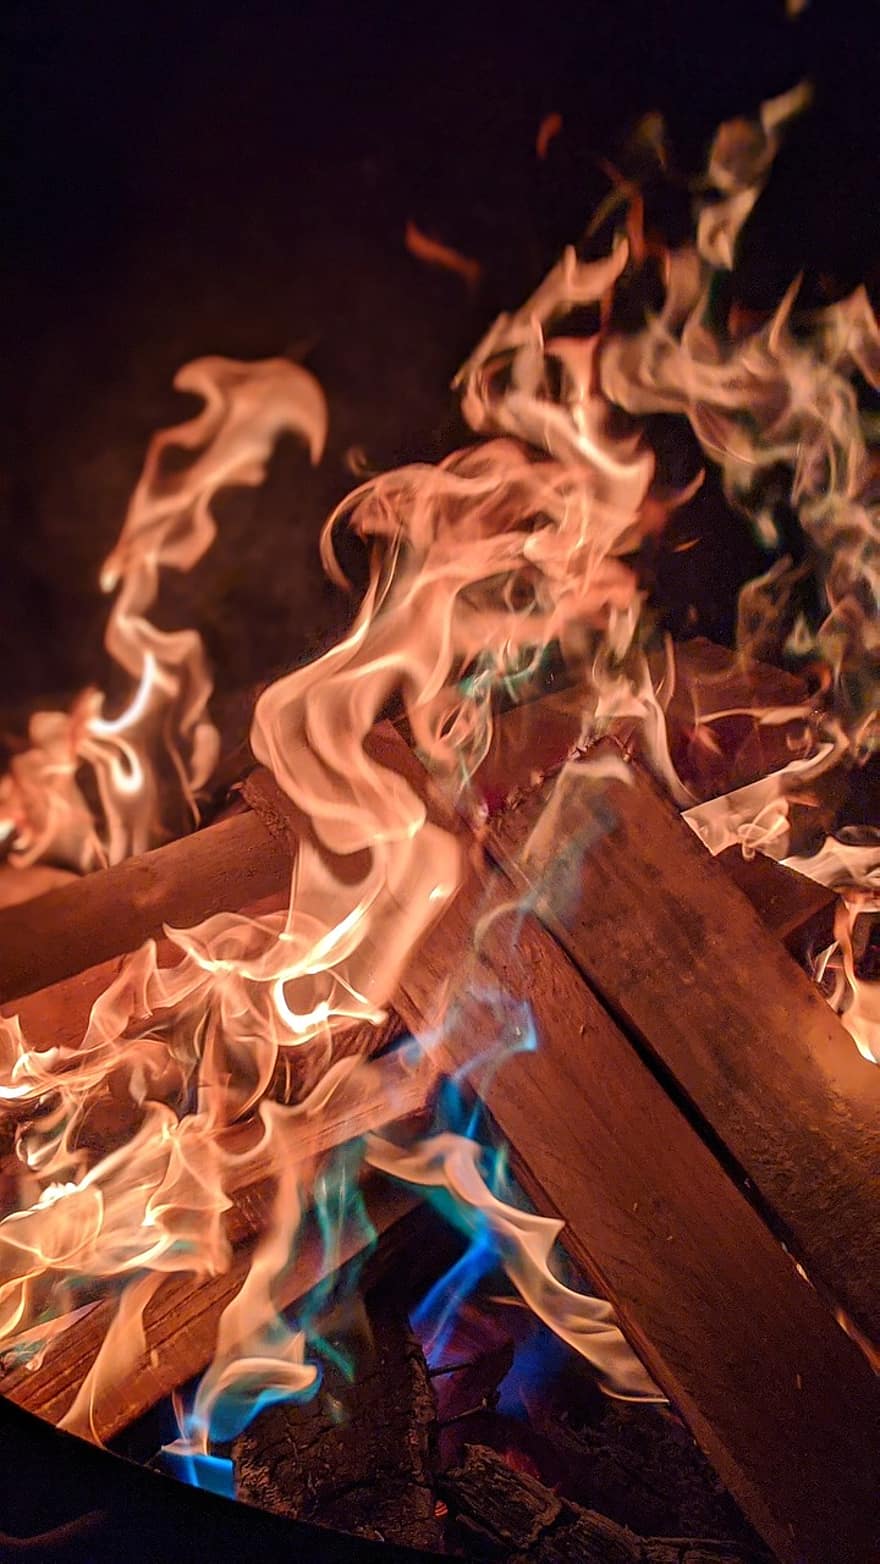 fuego, hoguera, madera, ardiente, noche, llama, caliente, quemar